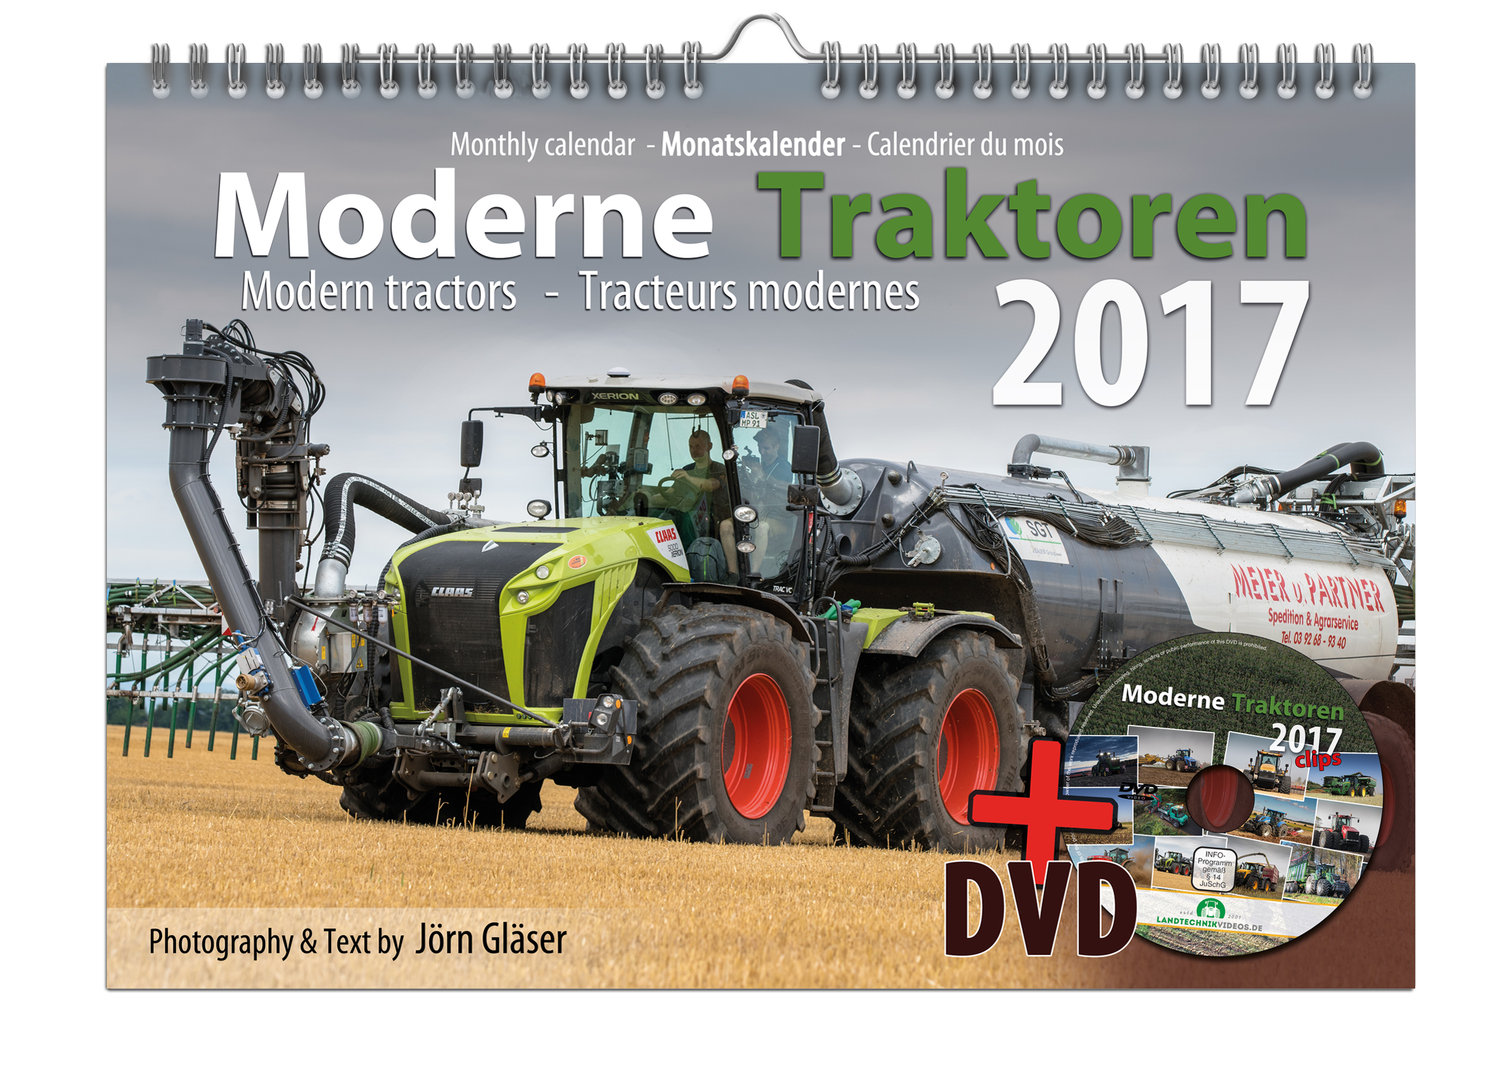 Tracteurs modernes calendrier 2017 + DVD